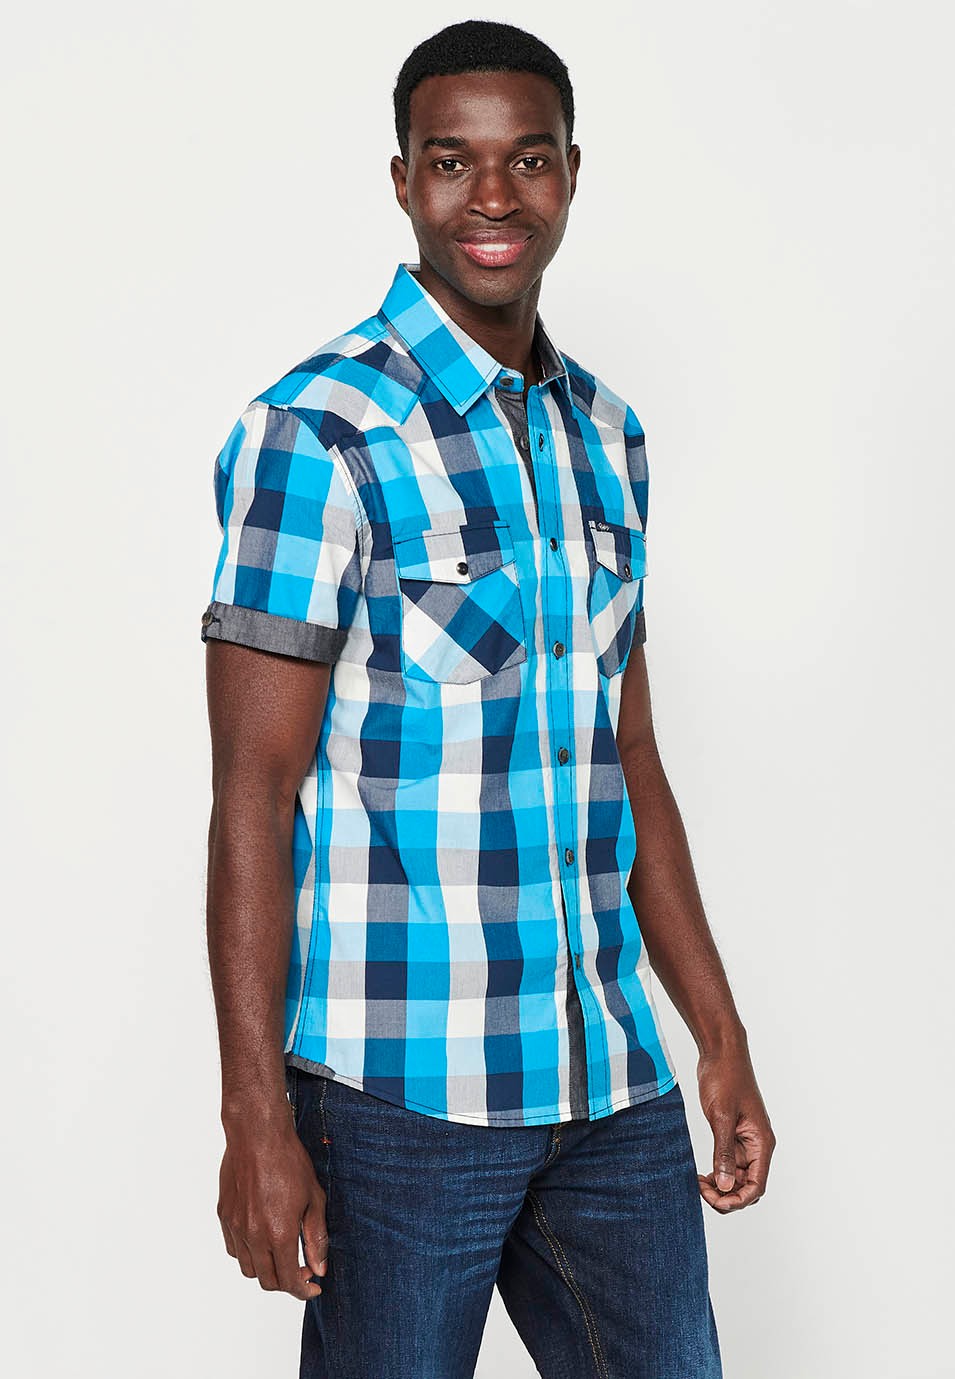 Camisa manga corta de algodón de cuadros, color azul y blanco para hombres 2